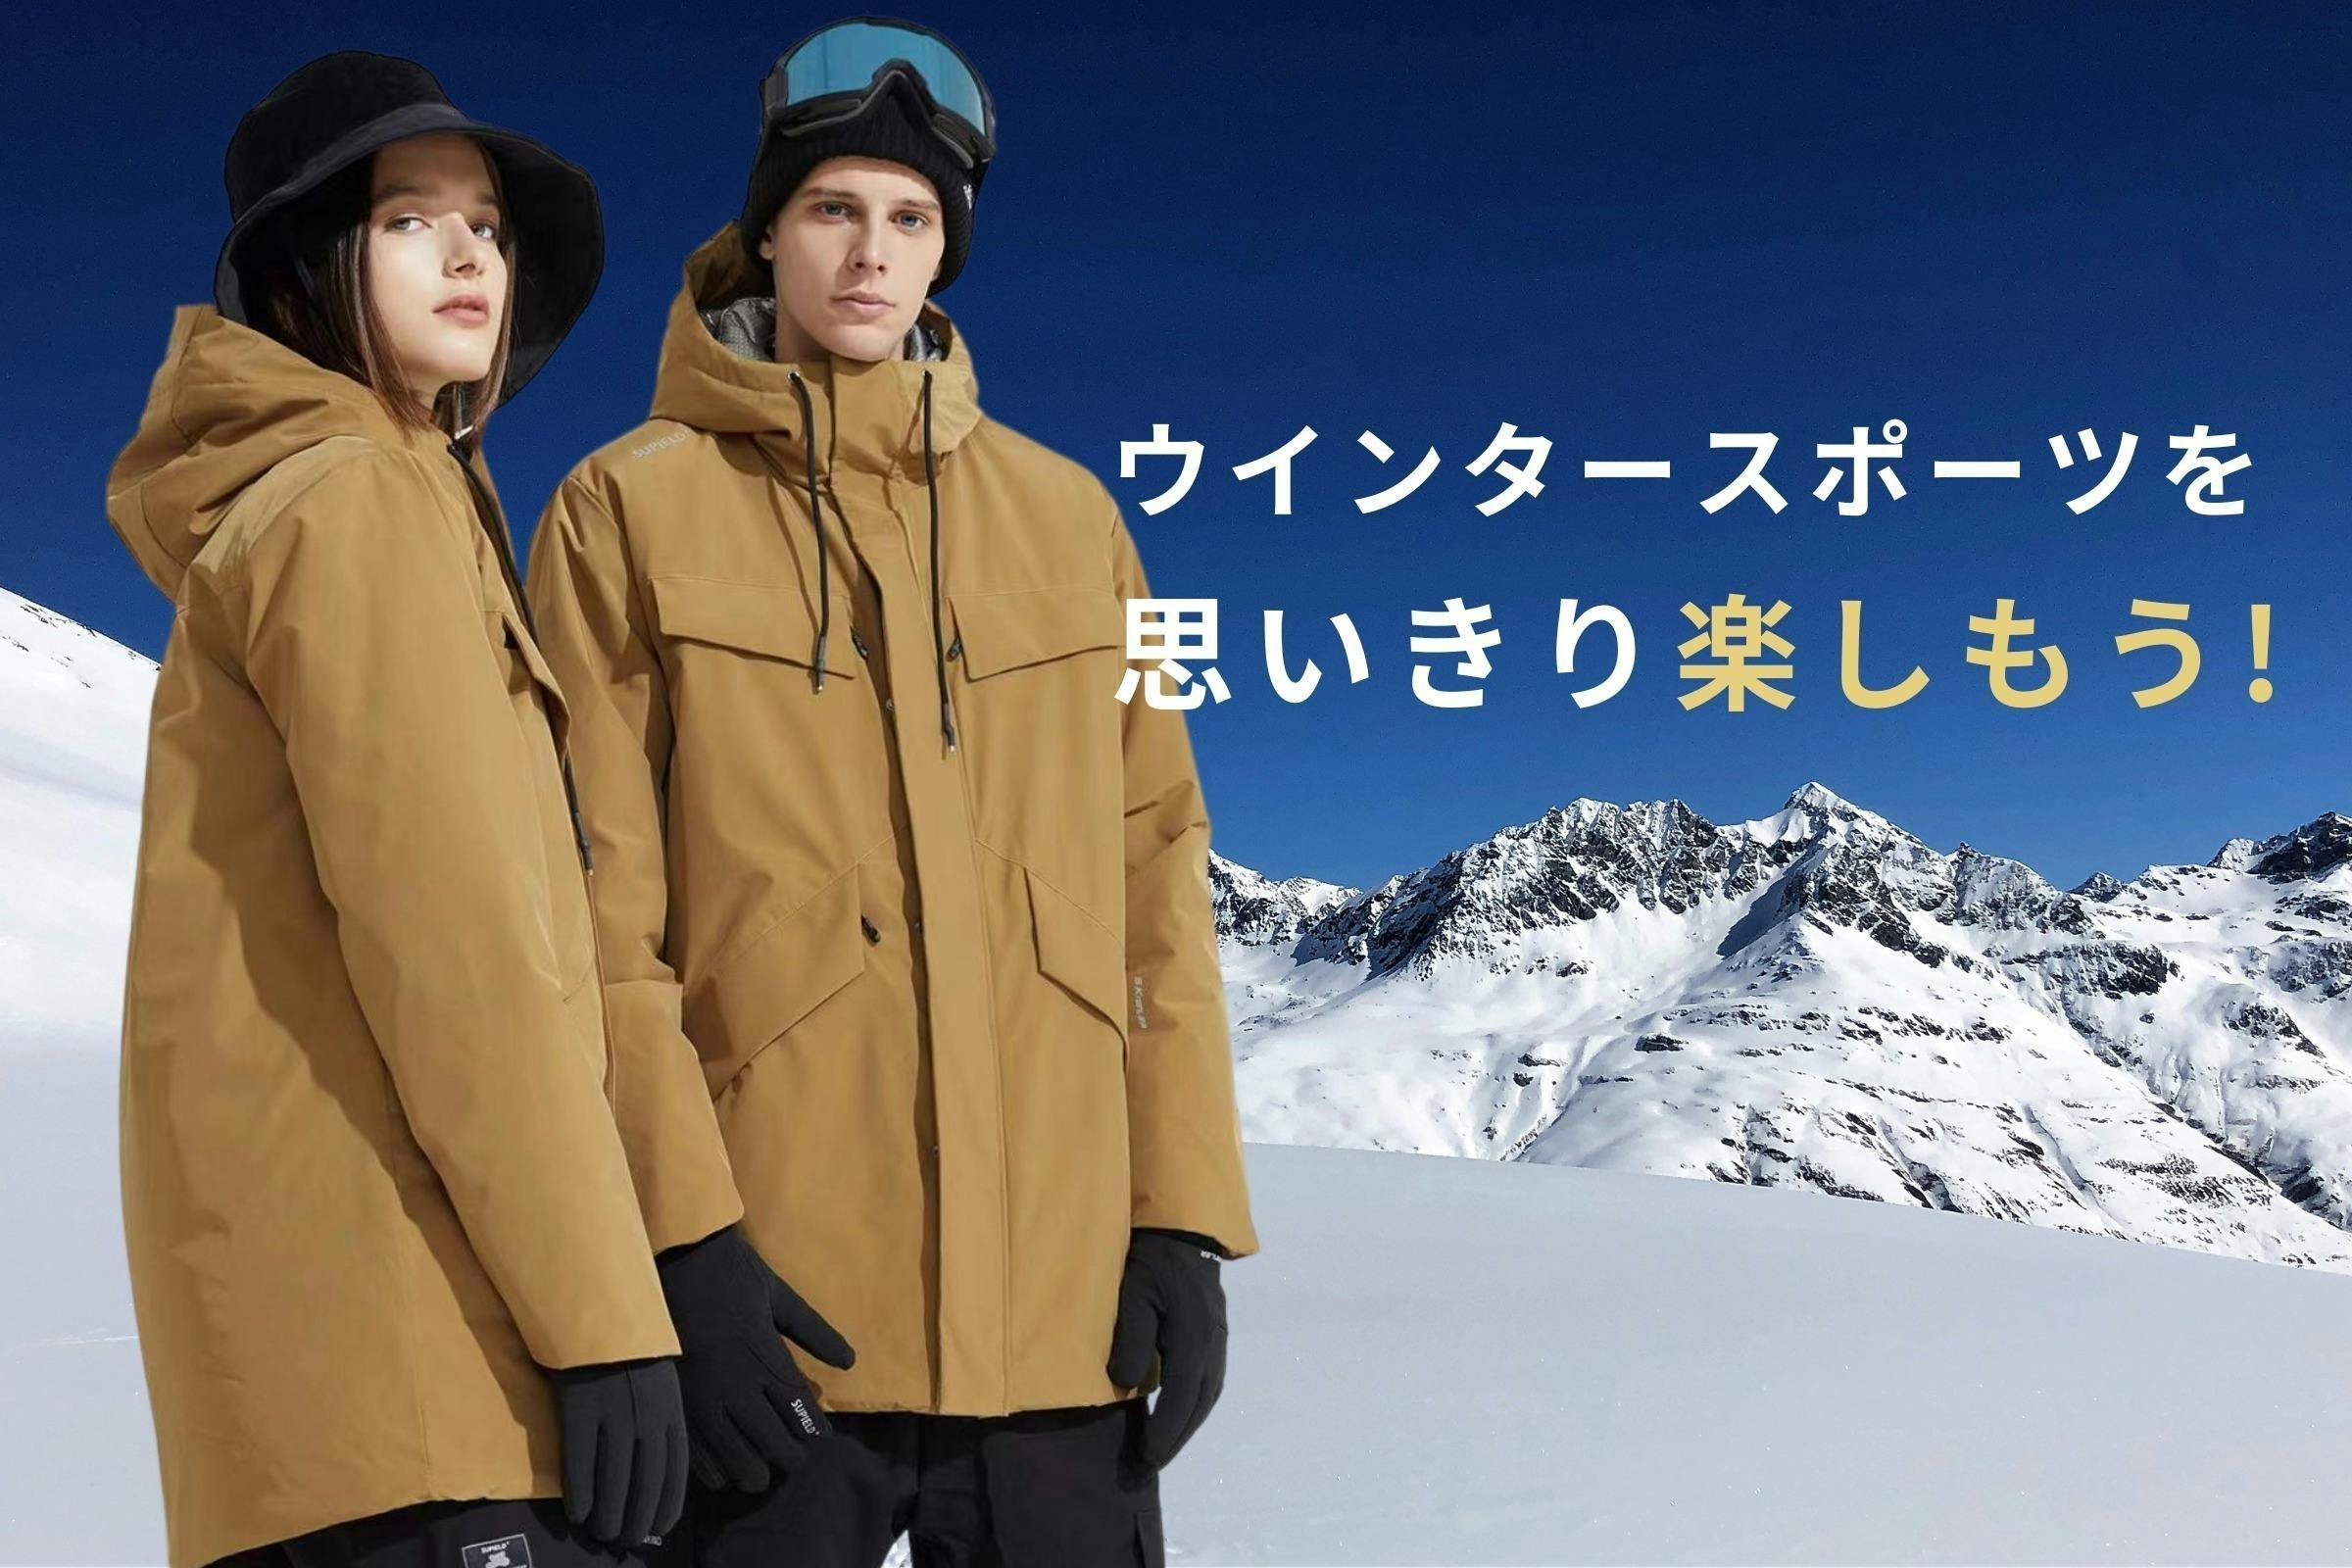 更に進化！宇宙服素材採用「高機能防寒ジャケット」【防寒性・機能性